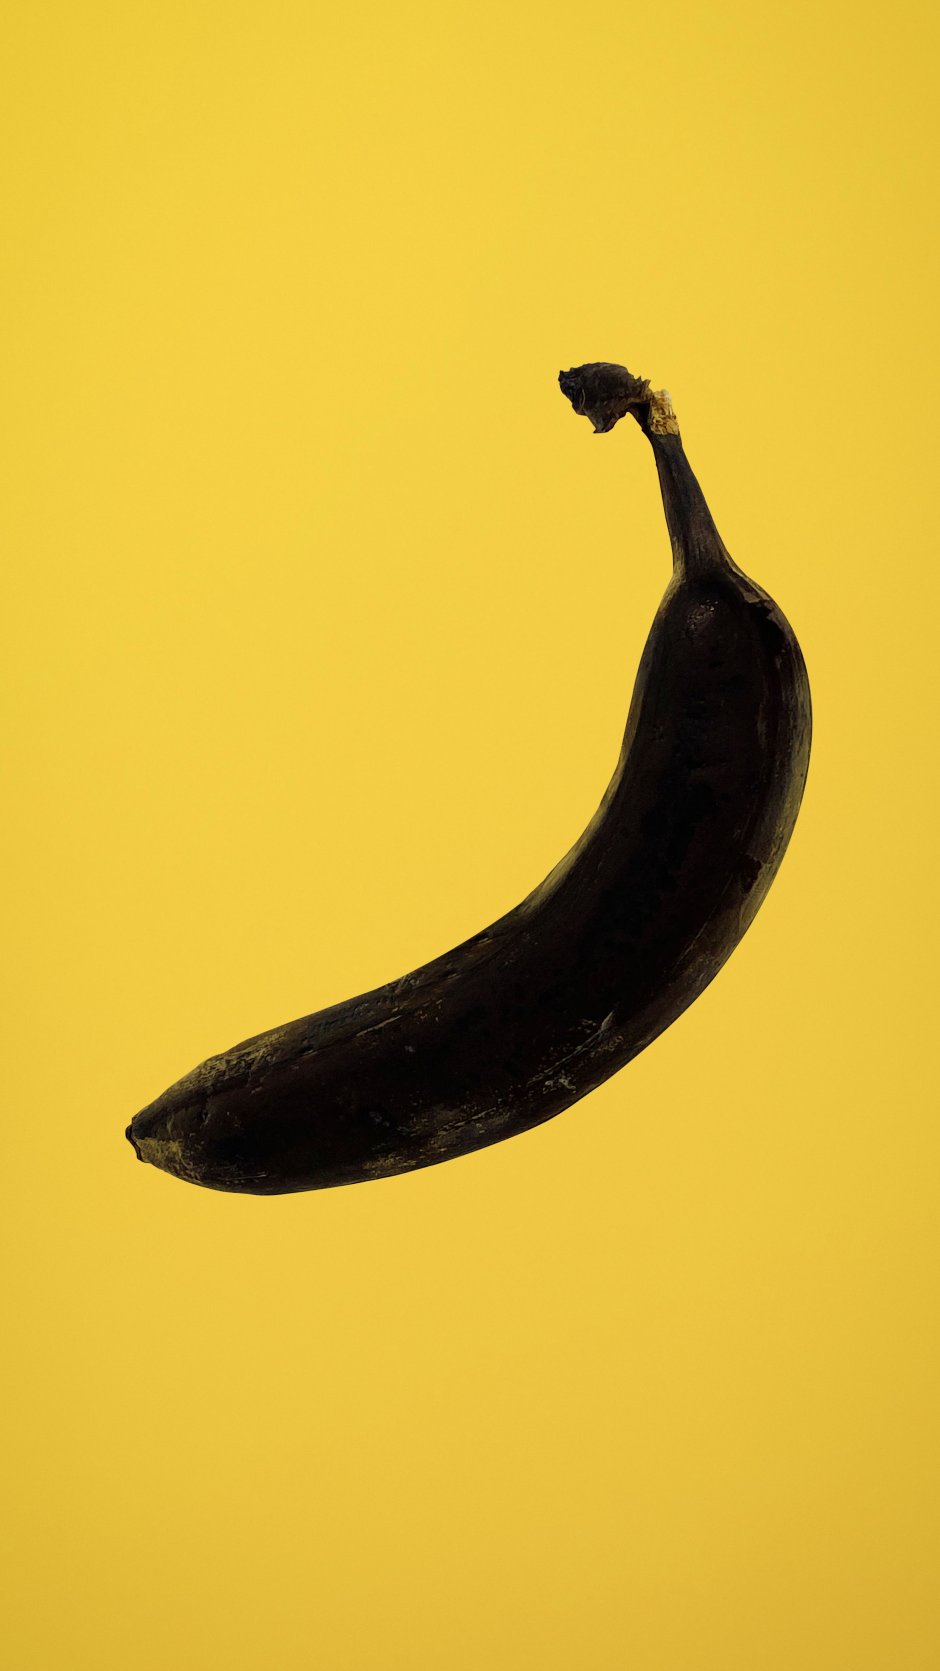 Гнилой банан